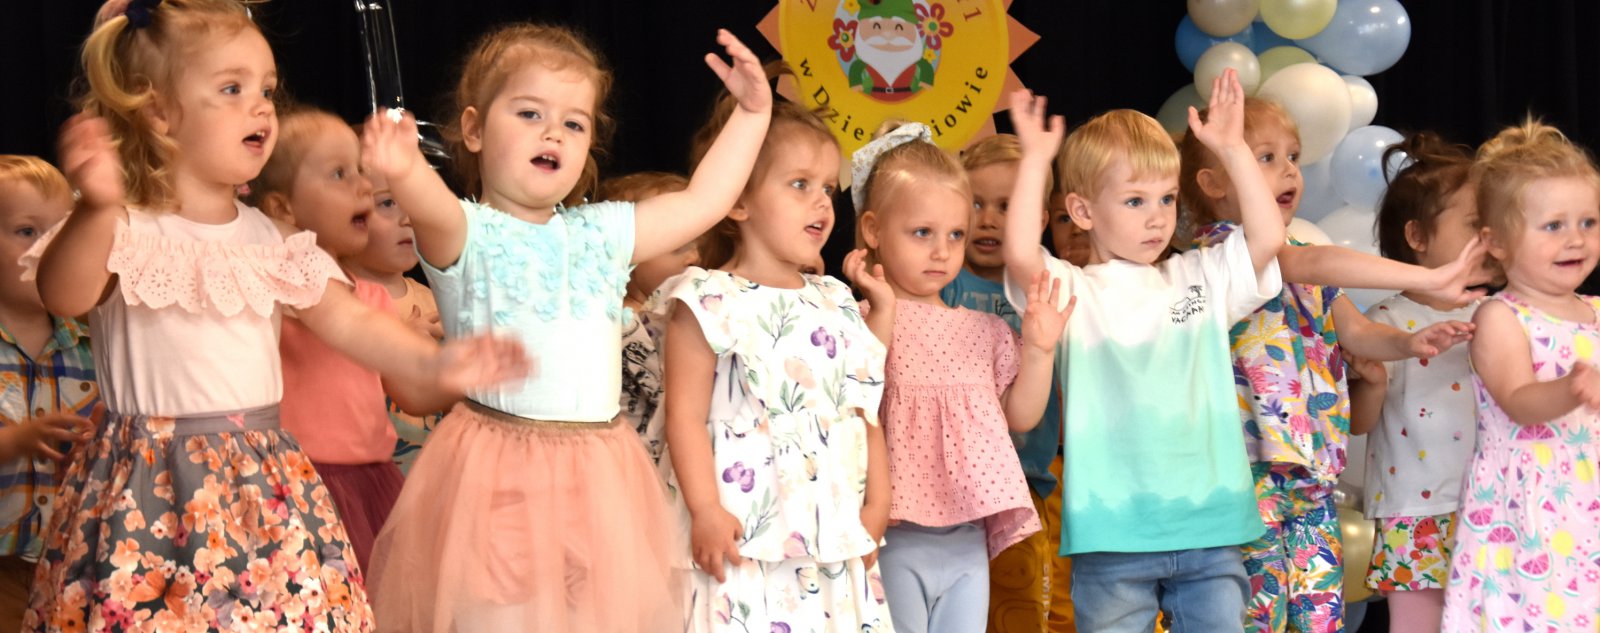 Grupka małych dzieci podczas występu na scenie